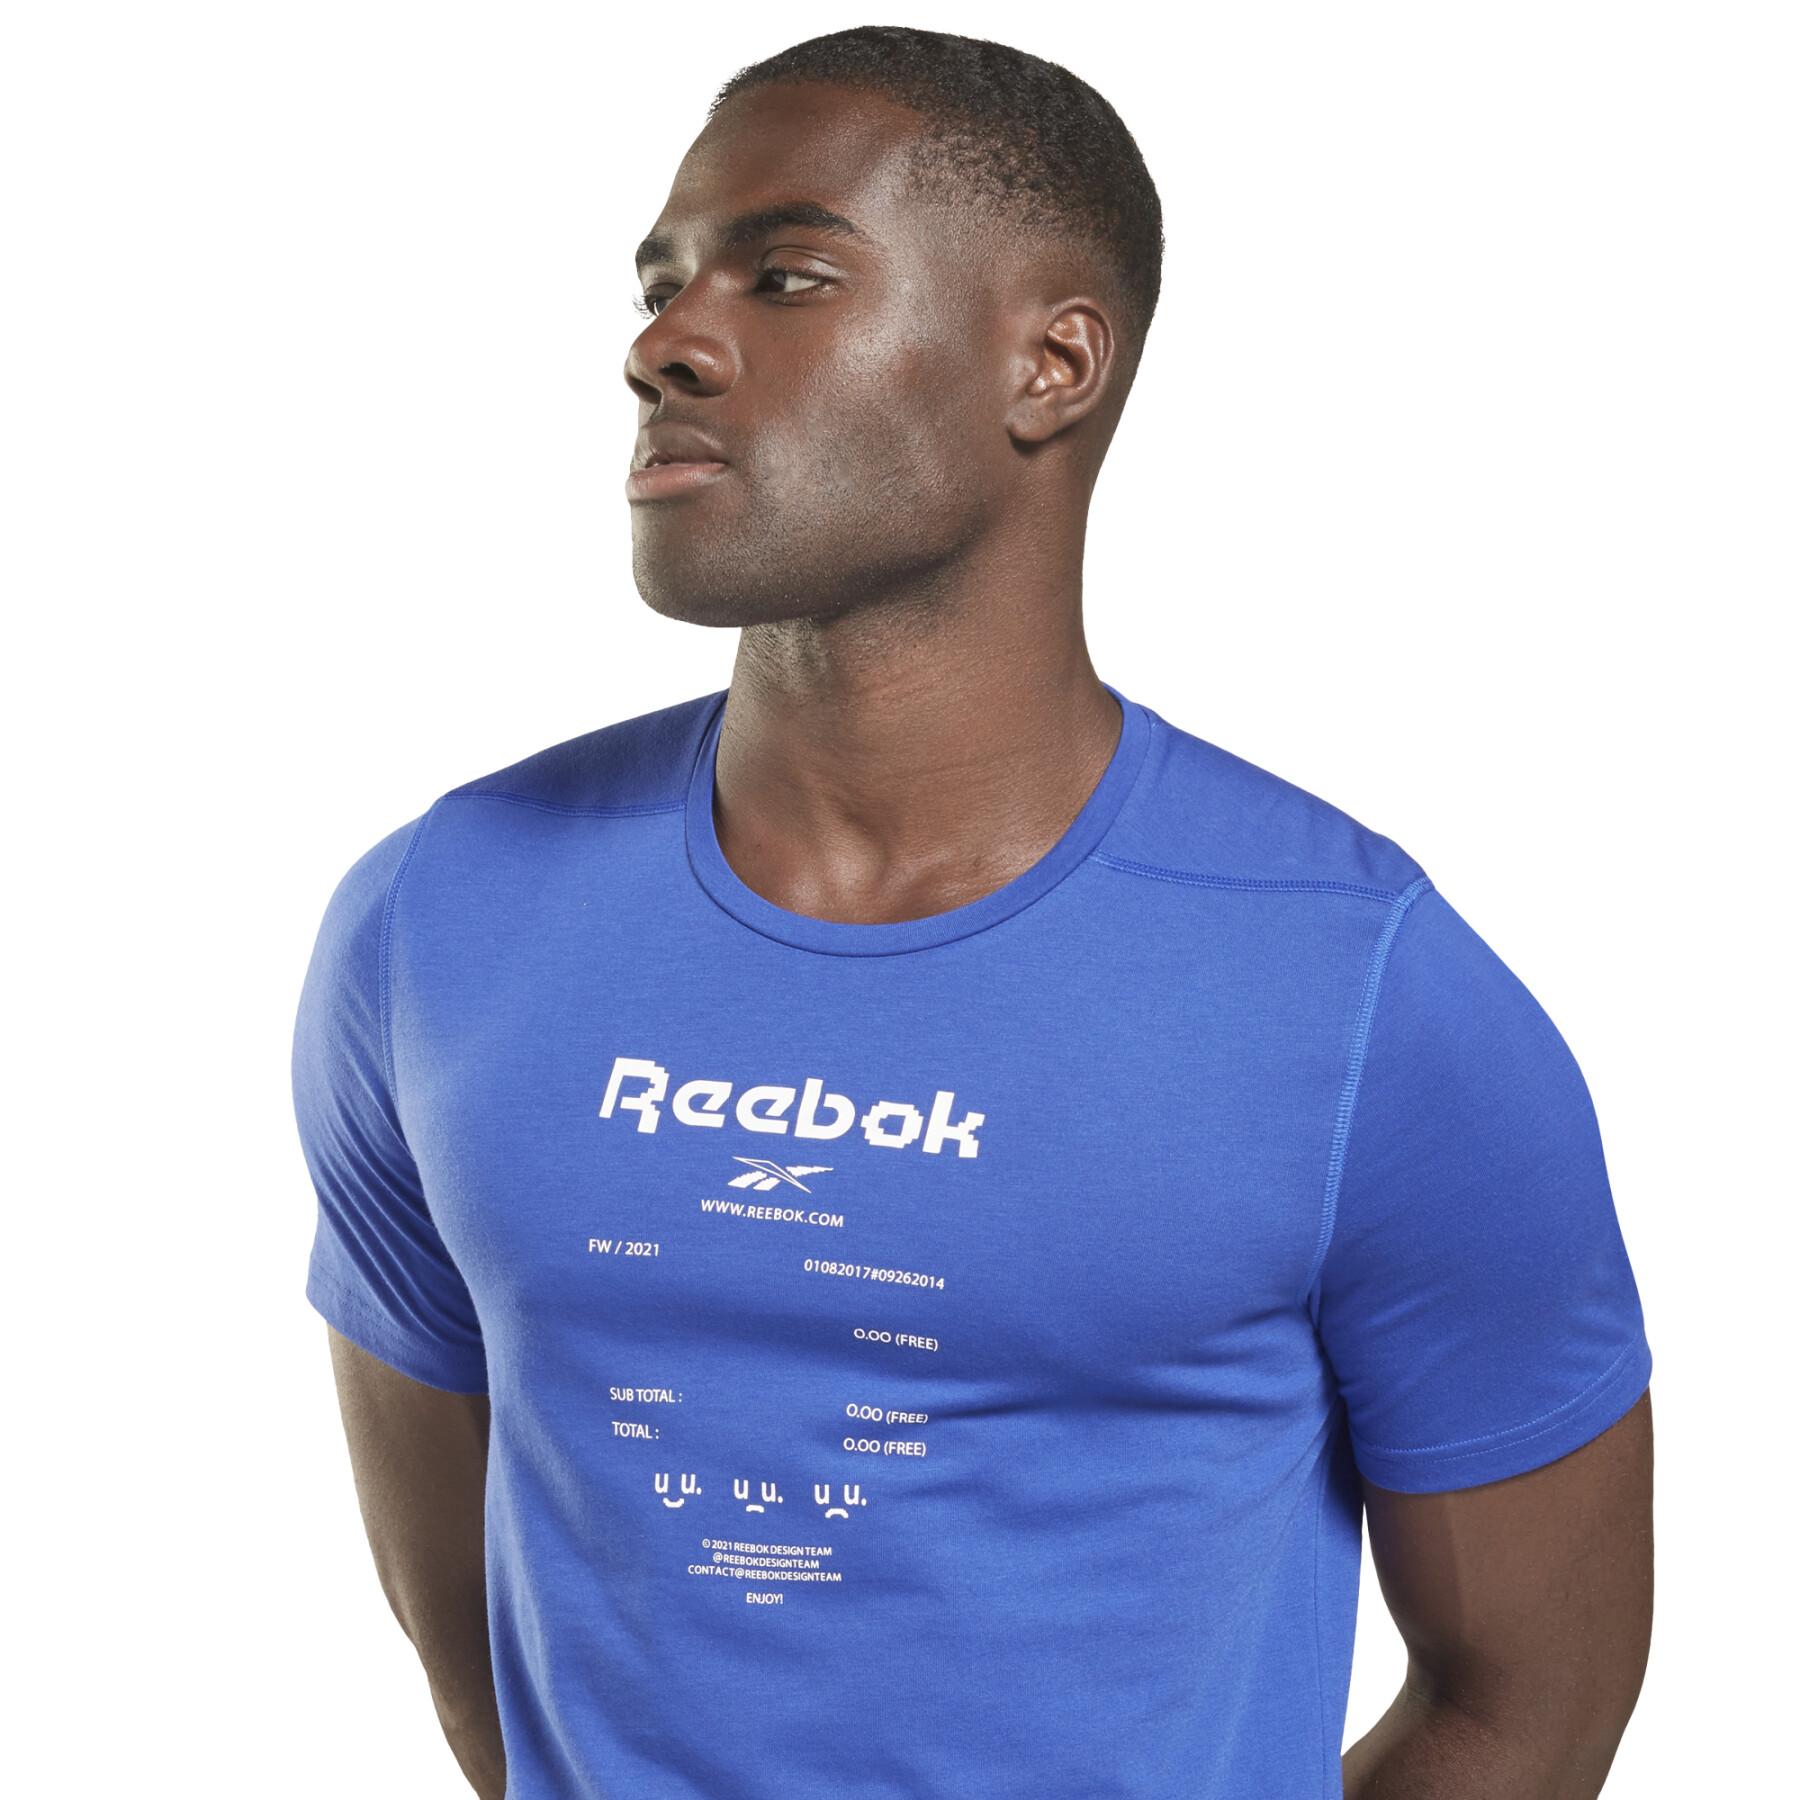 Camiseta Reebok Speedwick Graphic Move